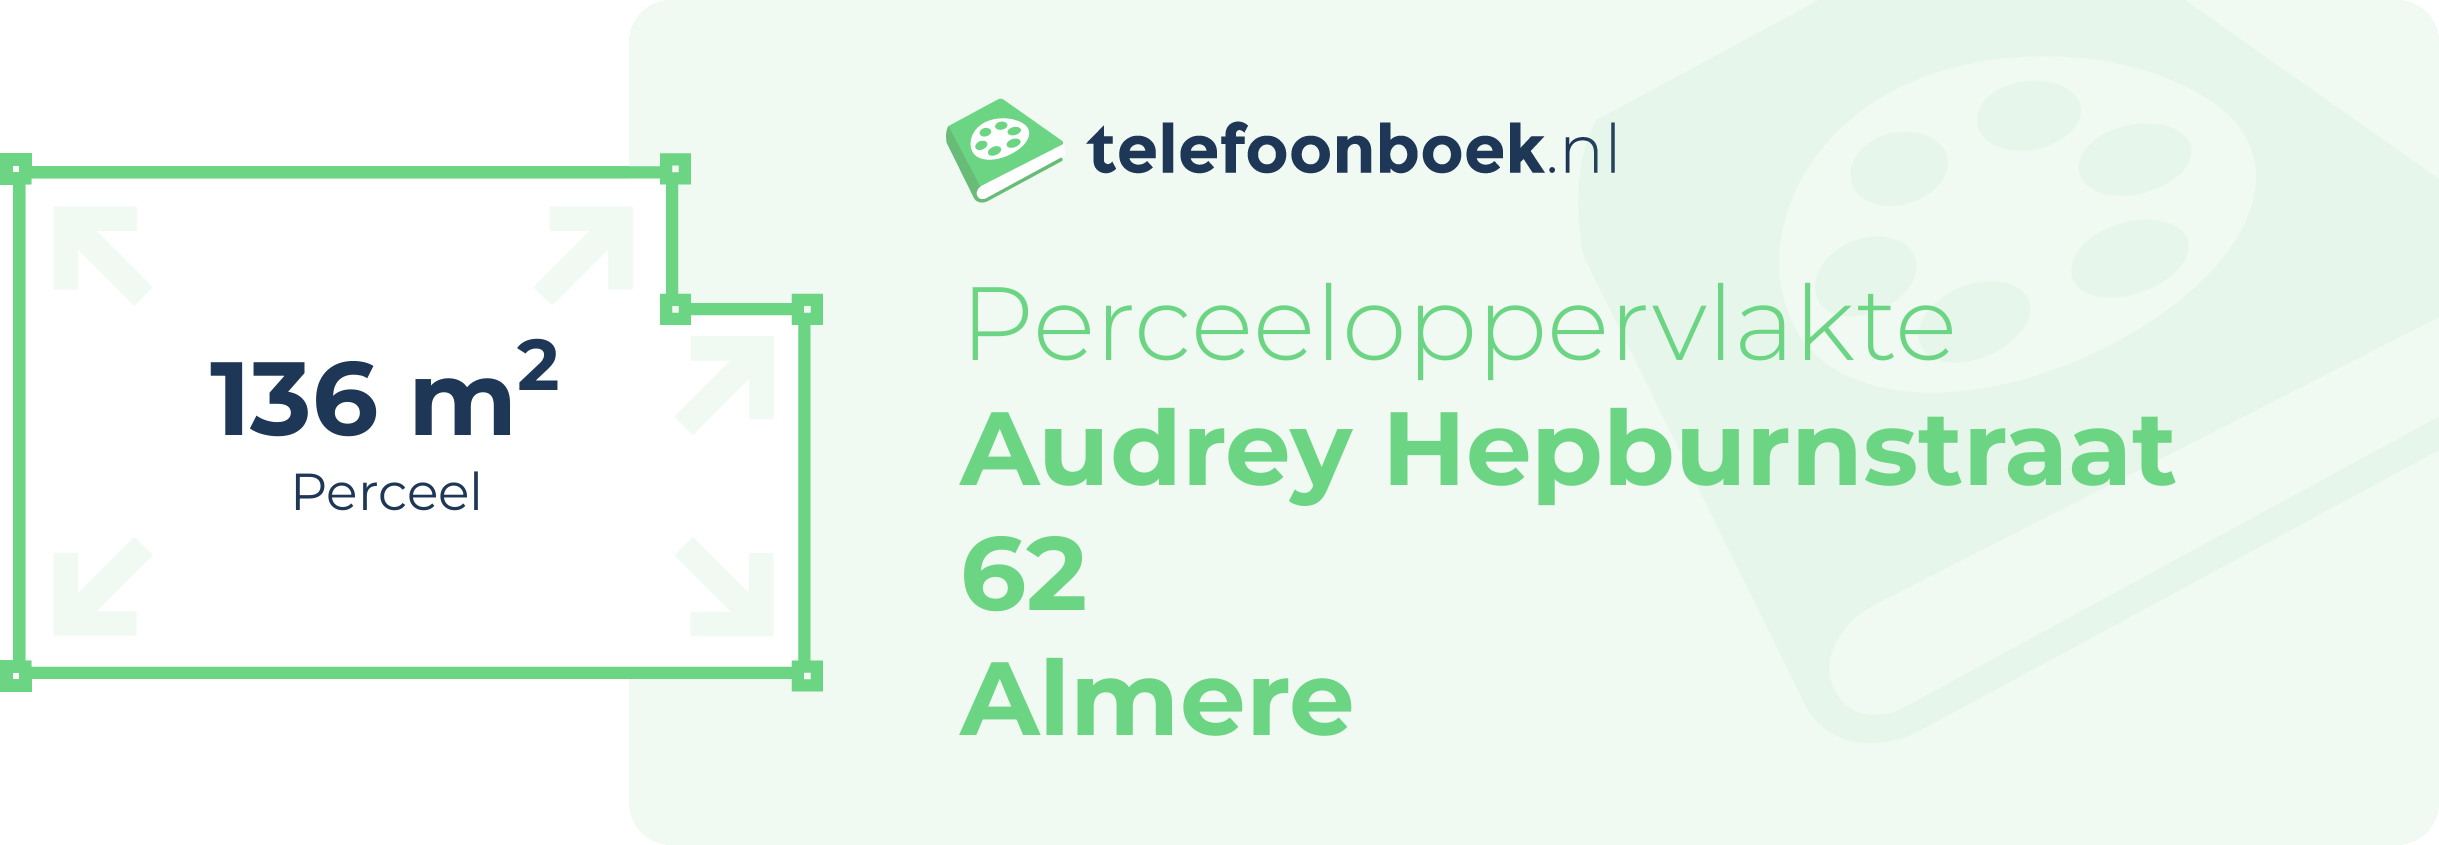 Perceeloppervlakte Audrey Hepburnstraat 62 Almere